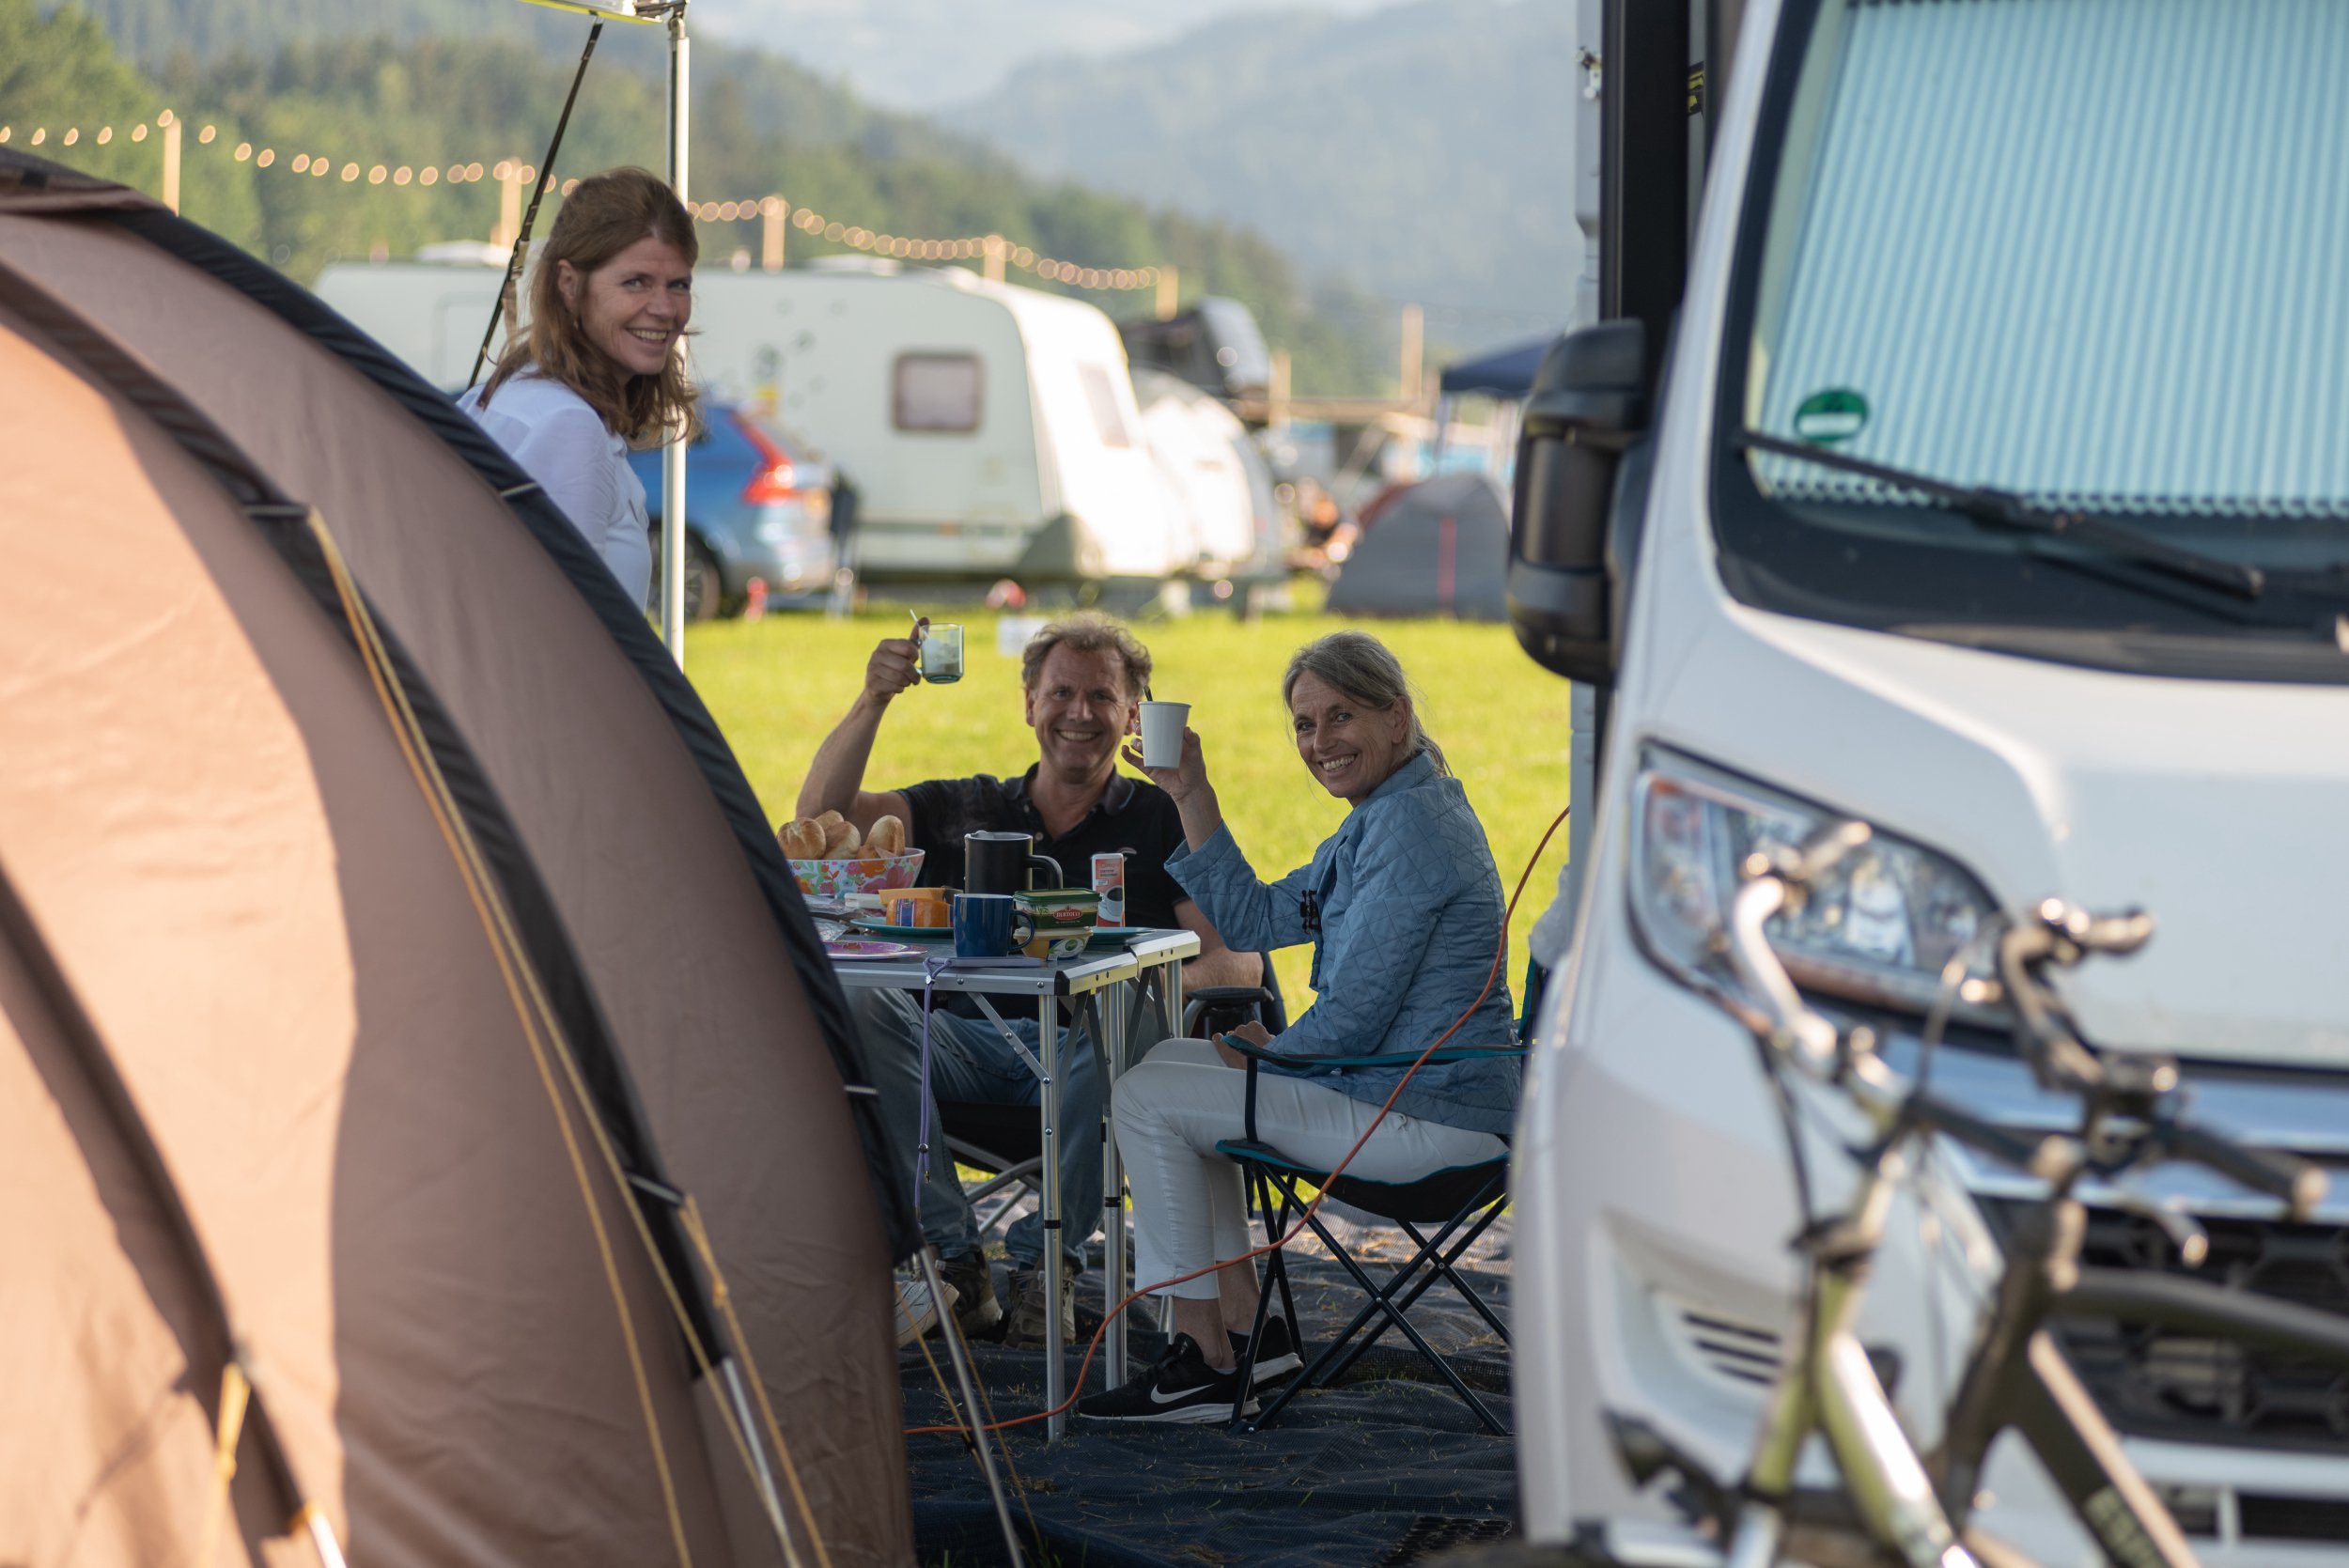 Übernachten Sie auf dem komfortabelsten Campingplatz in Imola – buchen Sie Ihre Unterkunft bei GPtents! Unser Camp liegt im Herzen der italienischen Region Emilia-Romagna. Eingebettet in üppiges Grün und umgeben von atemberaubenden Naturlandschaften bietet dieses Camp ein einzigartiges und unvergessliches Erlebnis für Naturliebhaber und Outdoor-Enthusiasten.